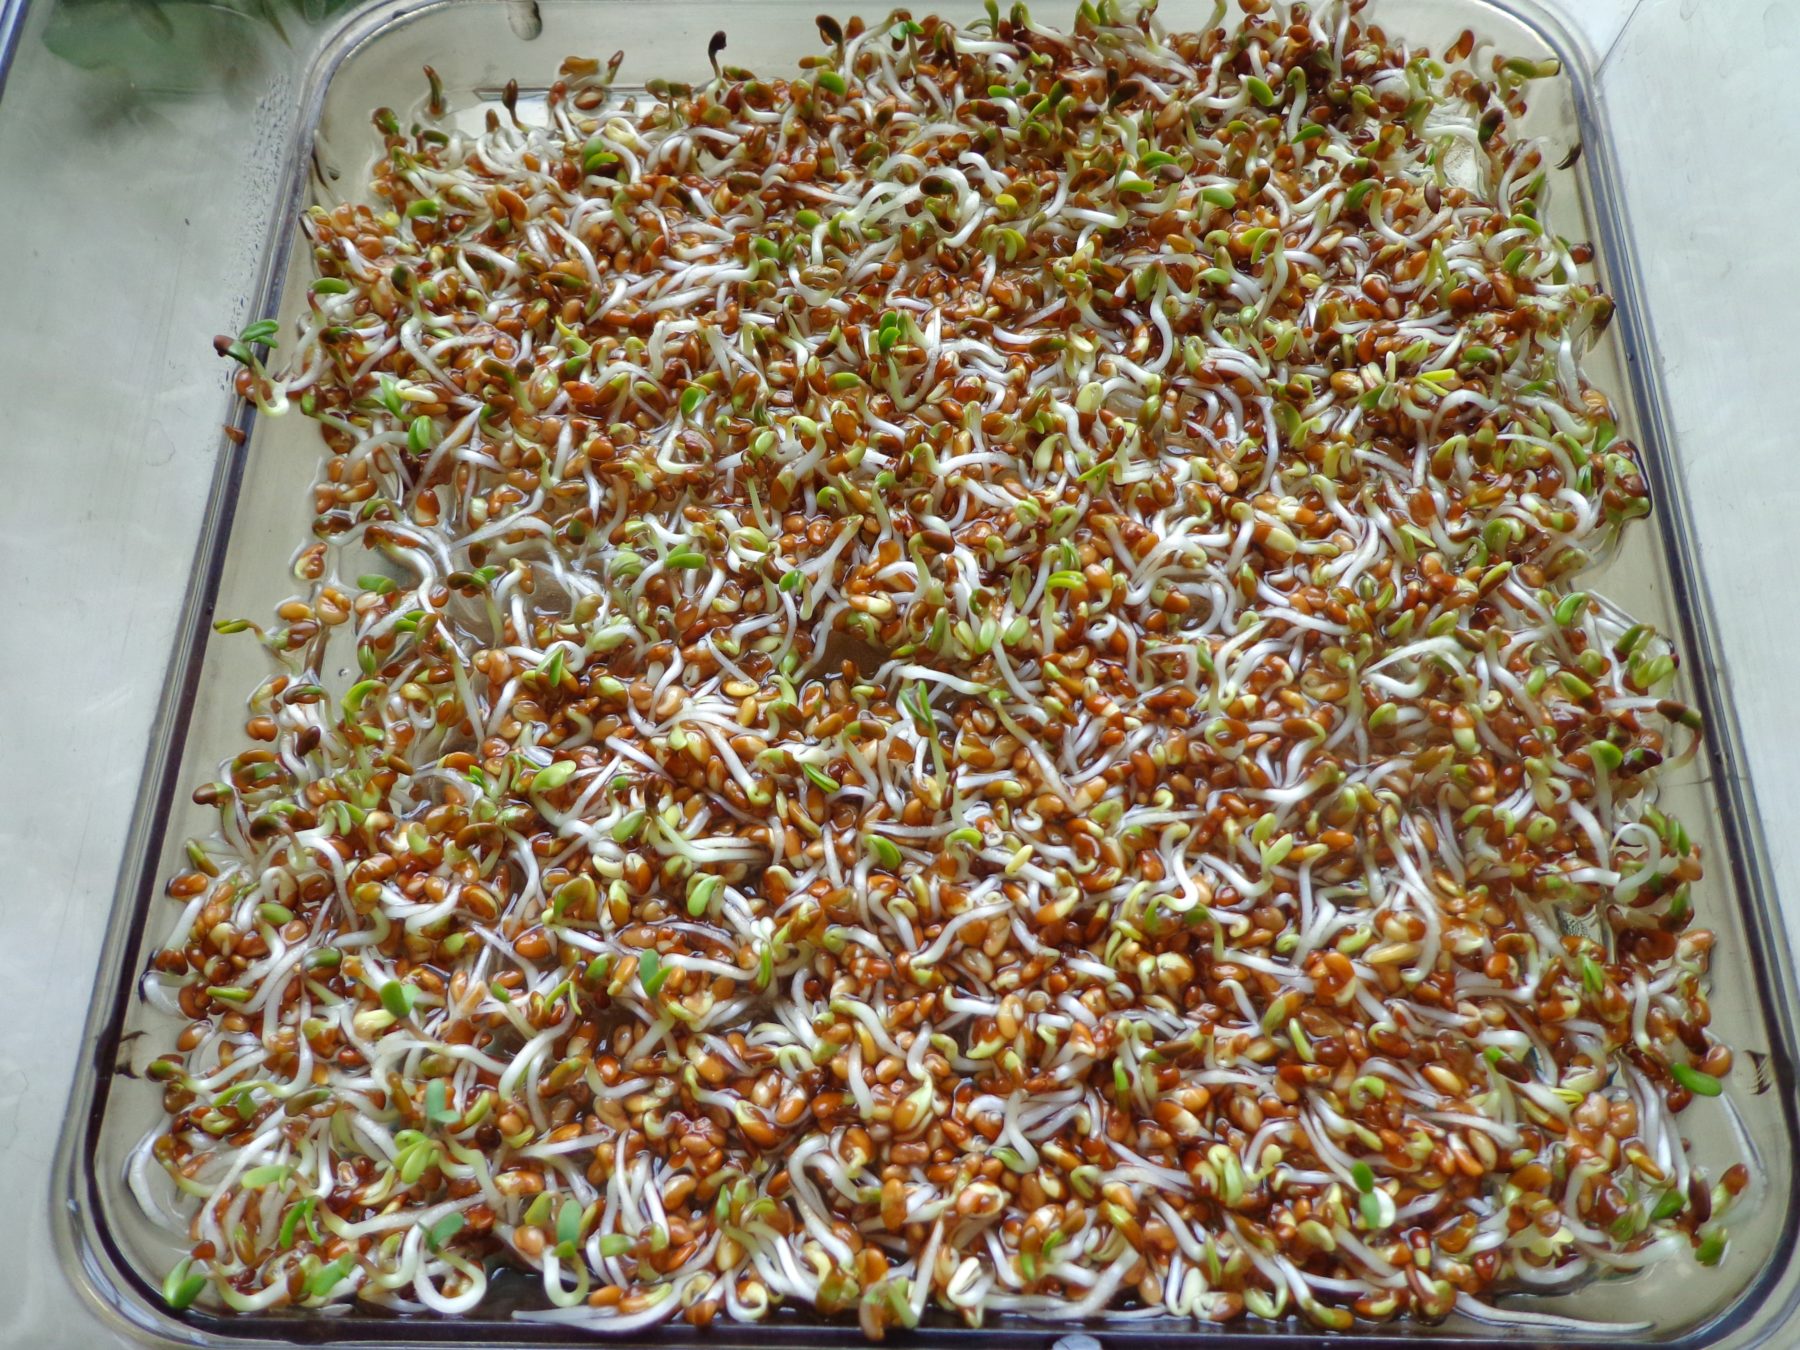 Gefahren beim Sprossenanbau: Junge Alfalfa Sprossen enthalten Canavanin